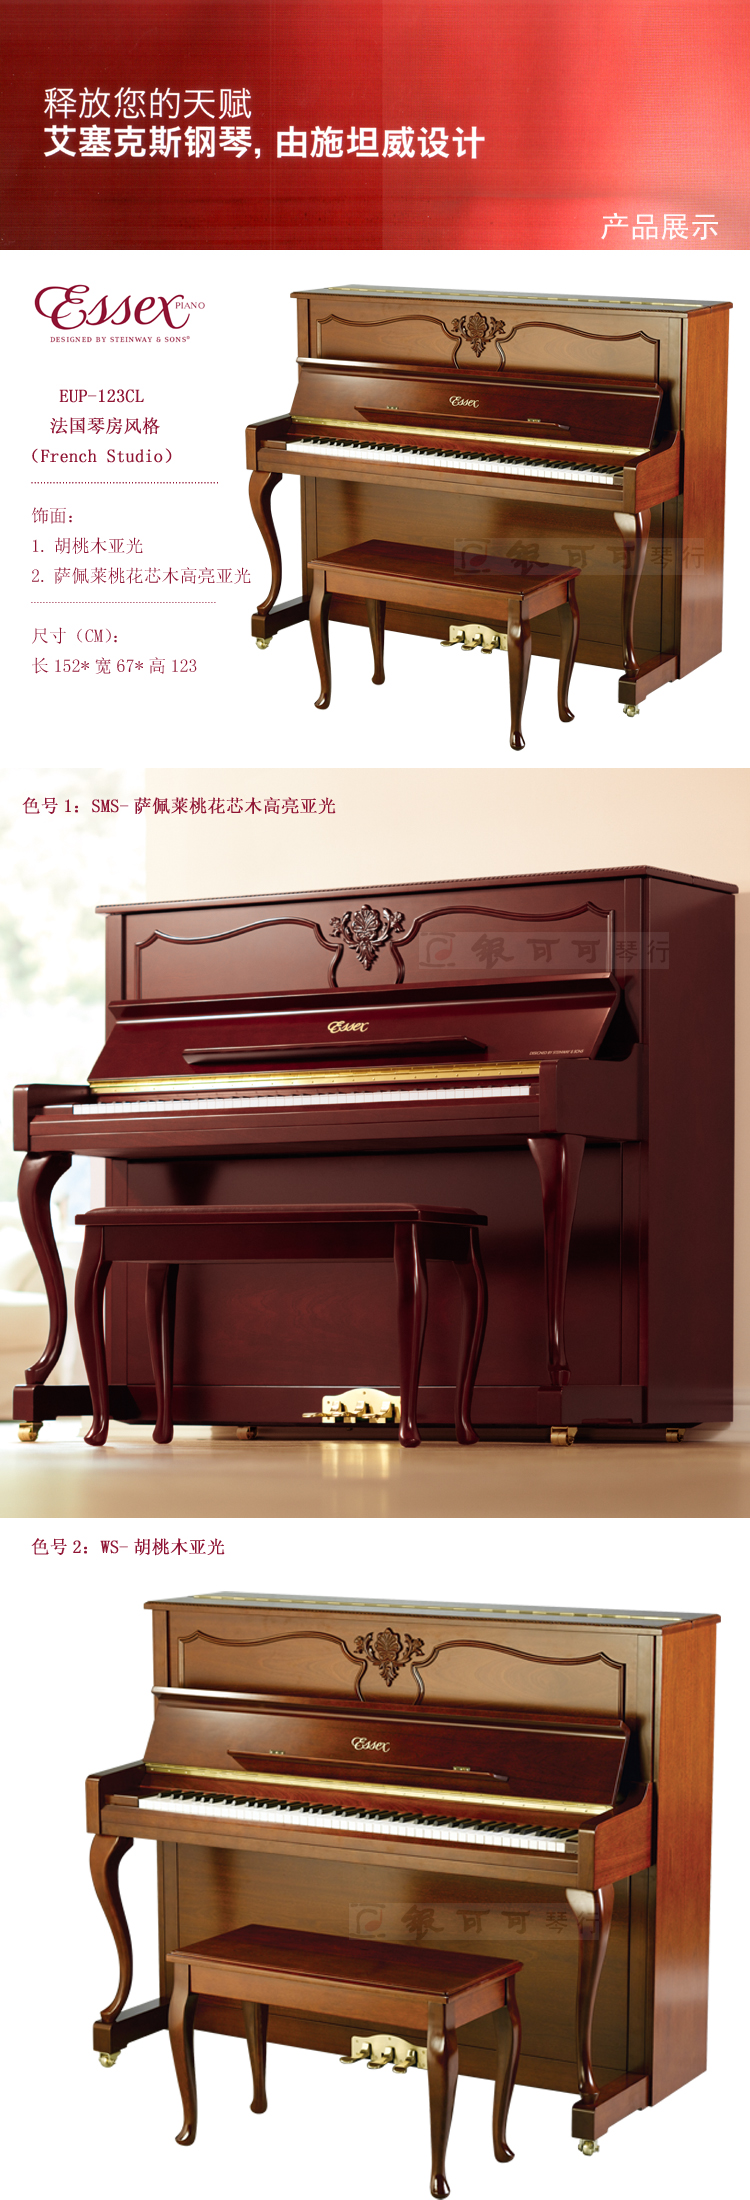 高端古典实木钢琴 艾塞克斯eup-123cl 施坦威家族系列essex立式钢琴